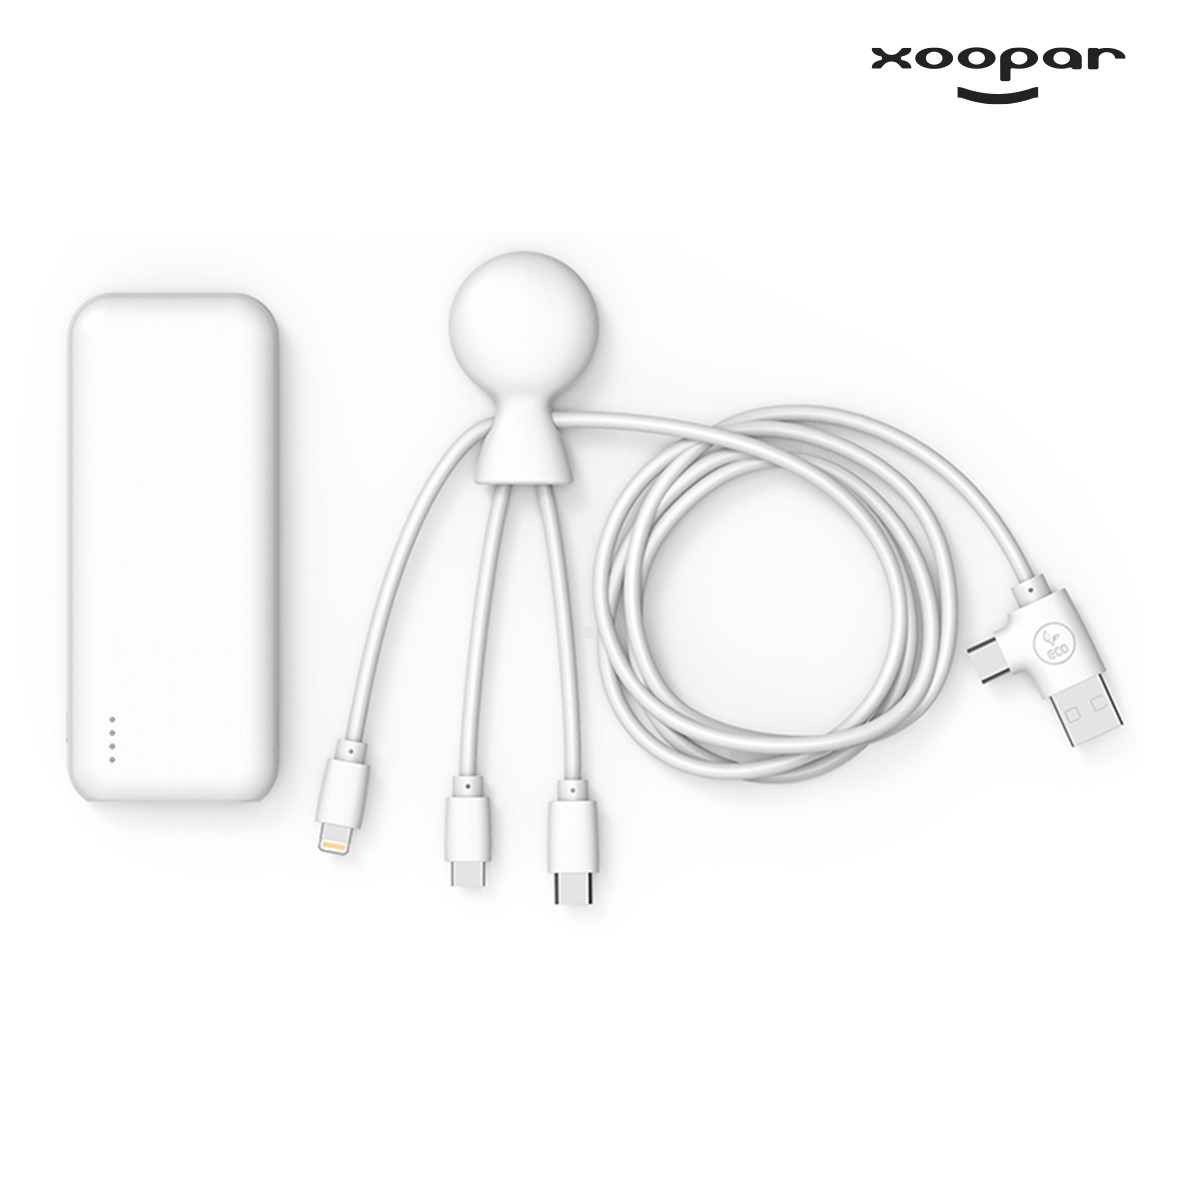 batterie chargeur et cables hepta eco xoopar personnalise-1